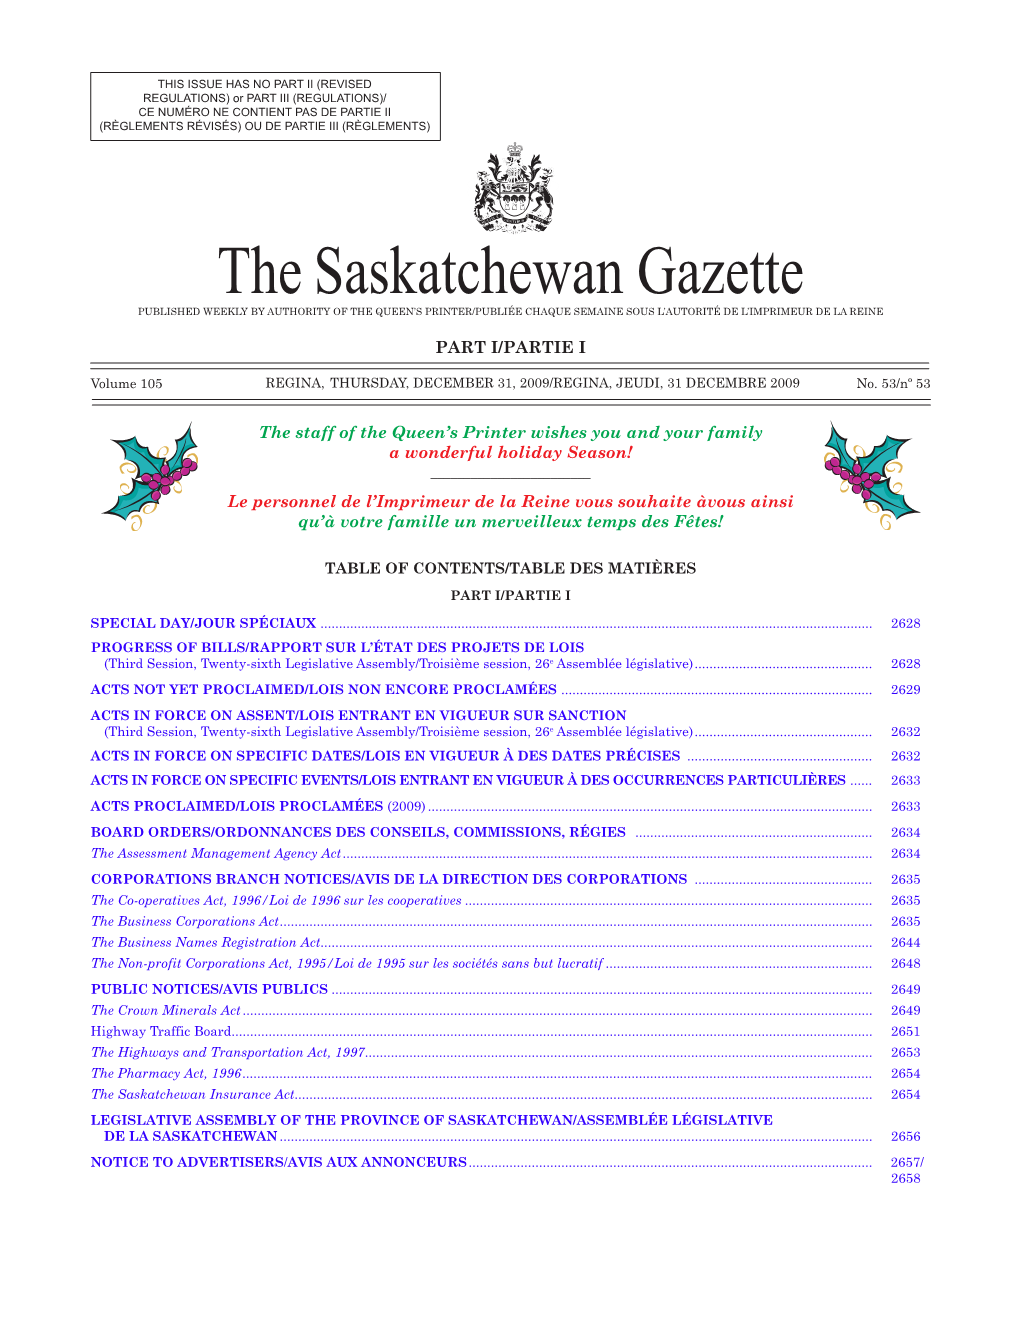 Sask Gazette, Part I, December 31, 2009